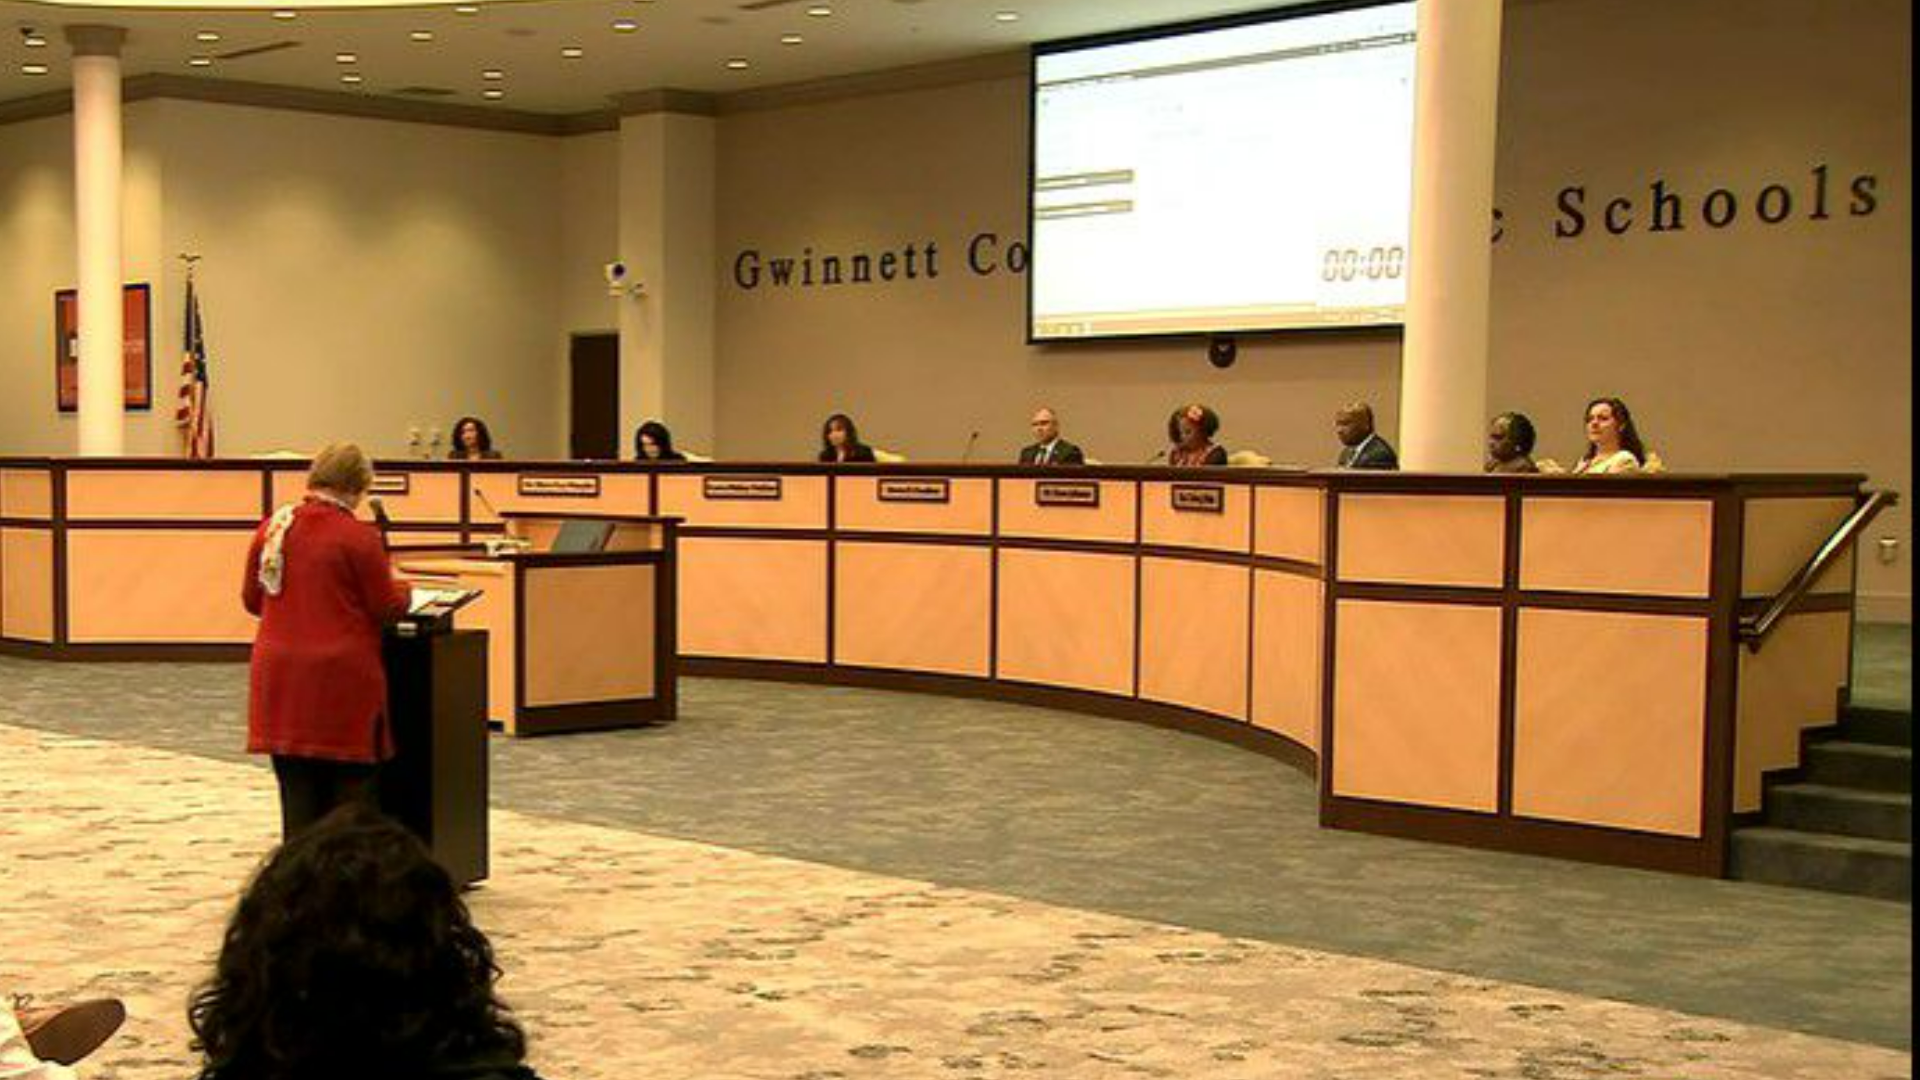 1920px x 1080px - Gwinnett County School Board delays vote on sex education curriculum â€“  WSB-TV Channel 2 - Atlanta